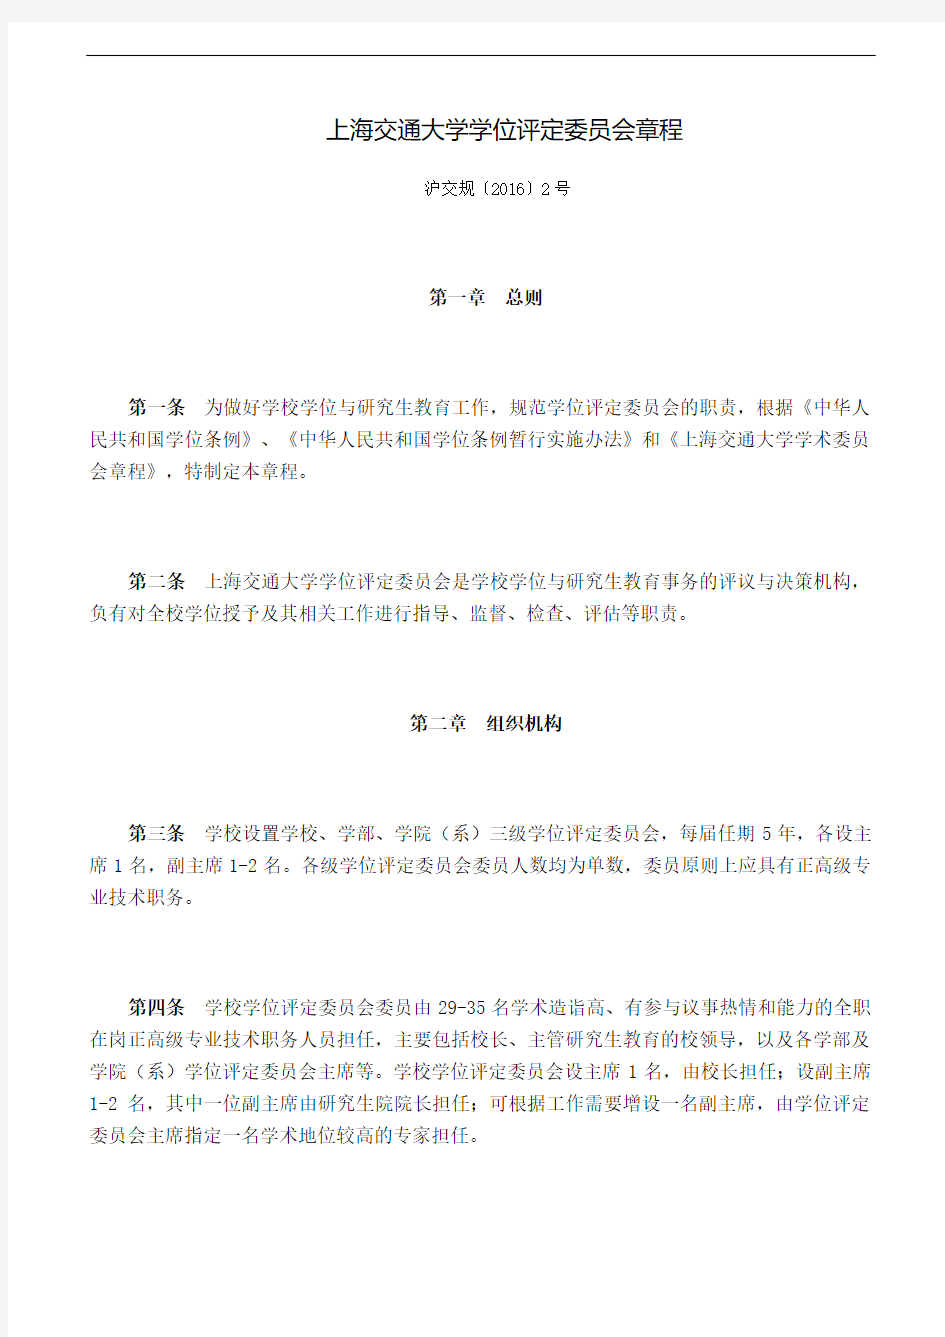 上海交通大学学位评定委员会章程